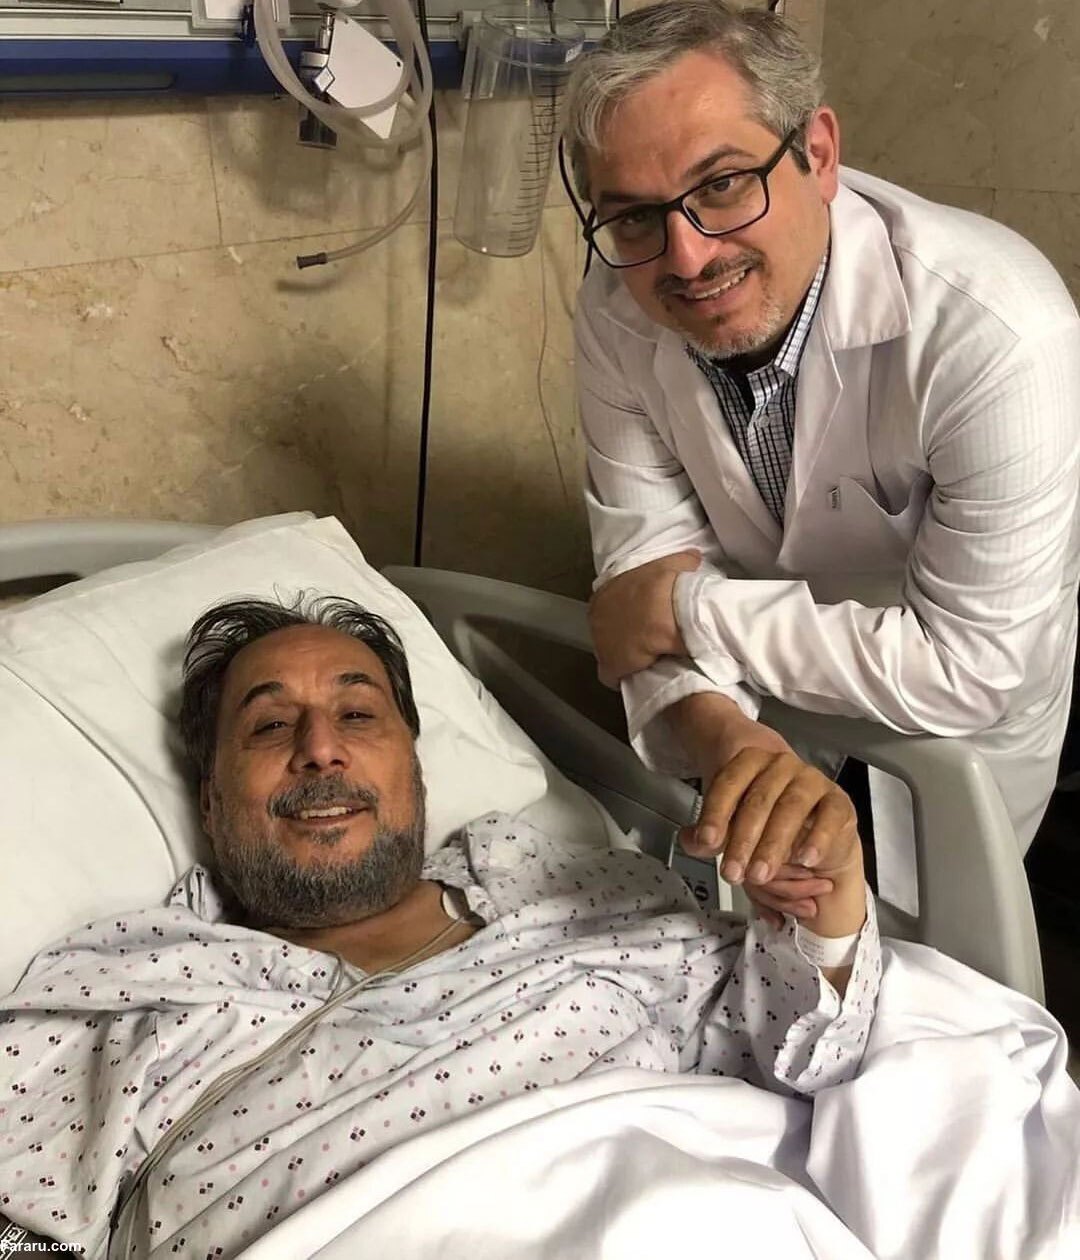 اولین تصویر از عمو قناد پس از جراحی در بیمارستان